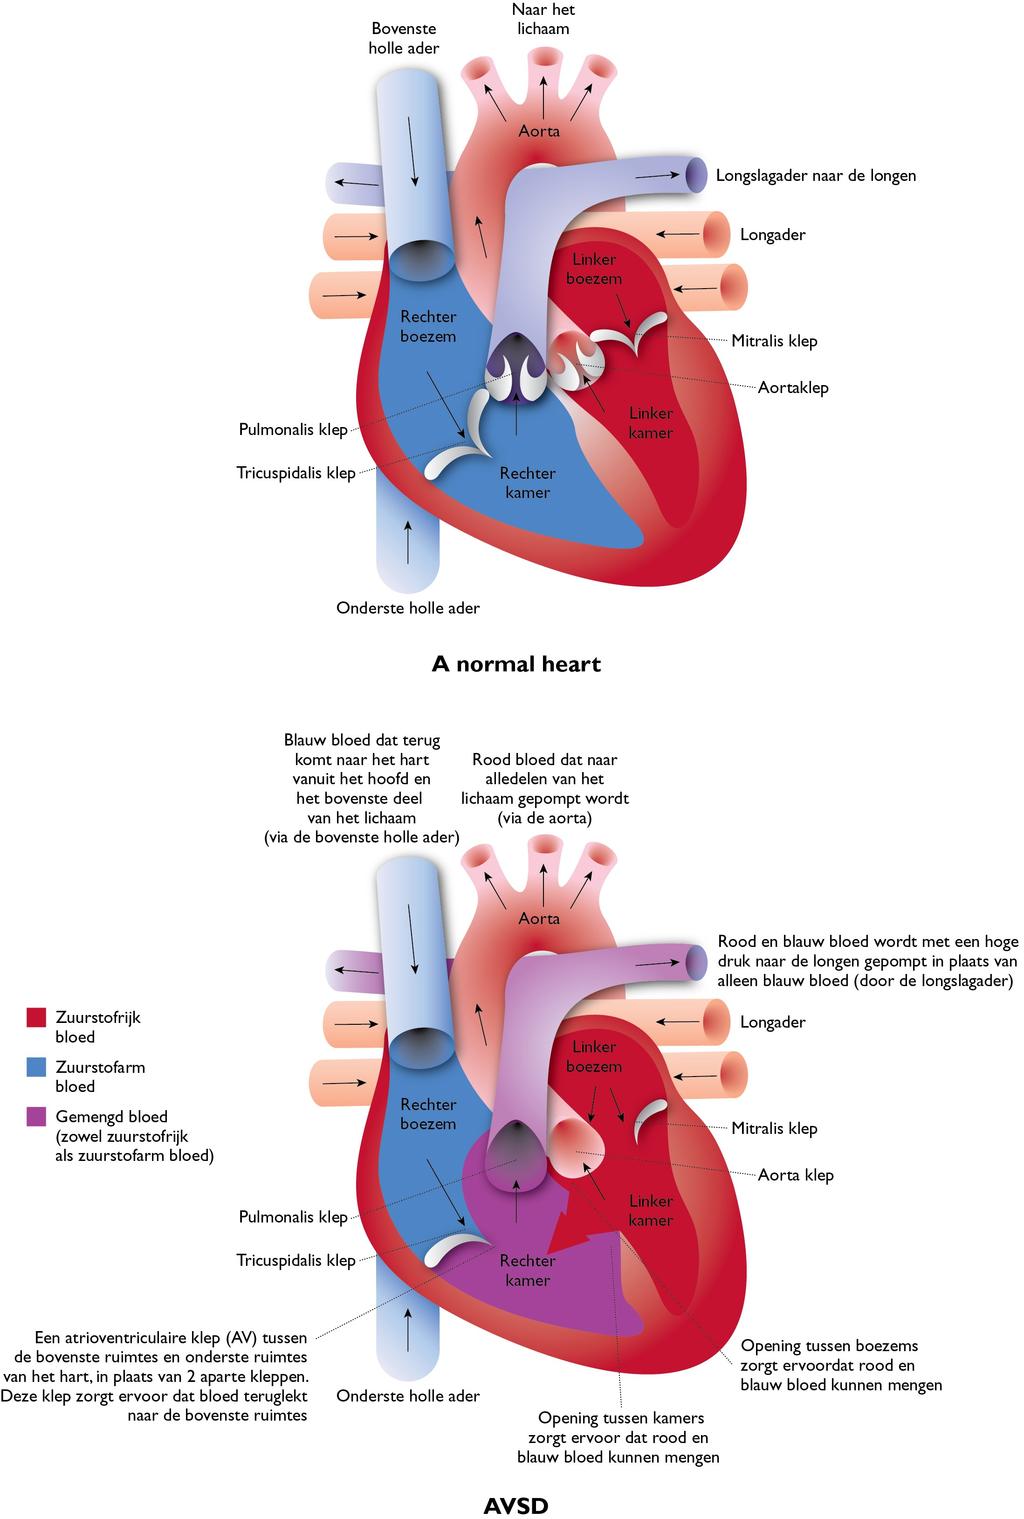 8 Ventrikel septum defecten (VSD s) Dit zijn gaatjes in het tussenschot tussen de kamers van het hart.